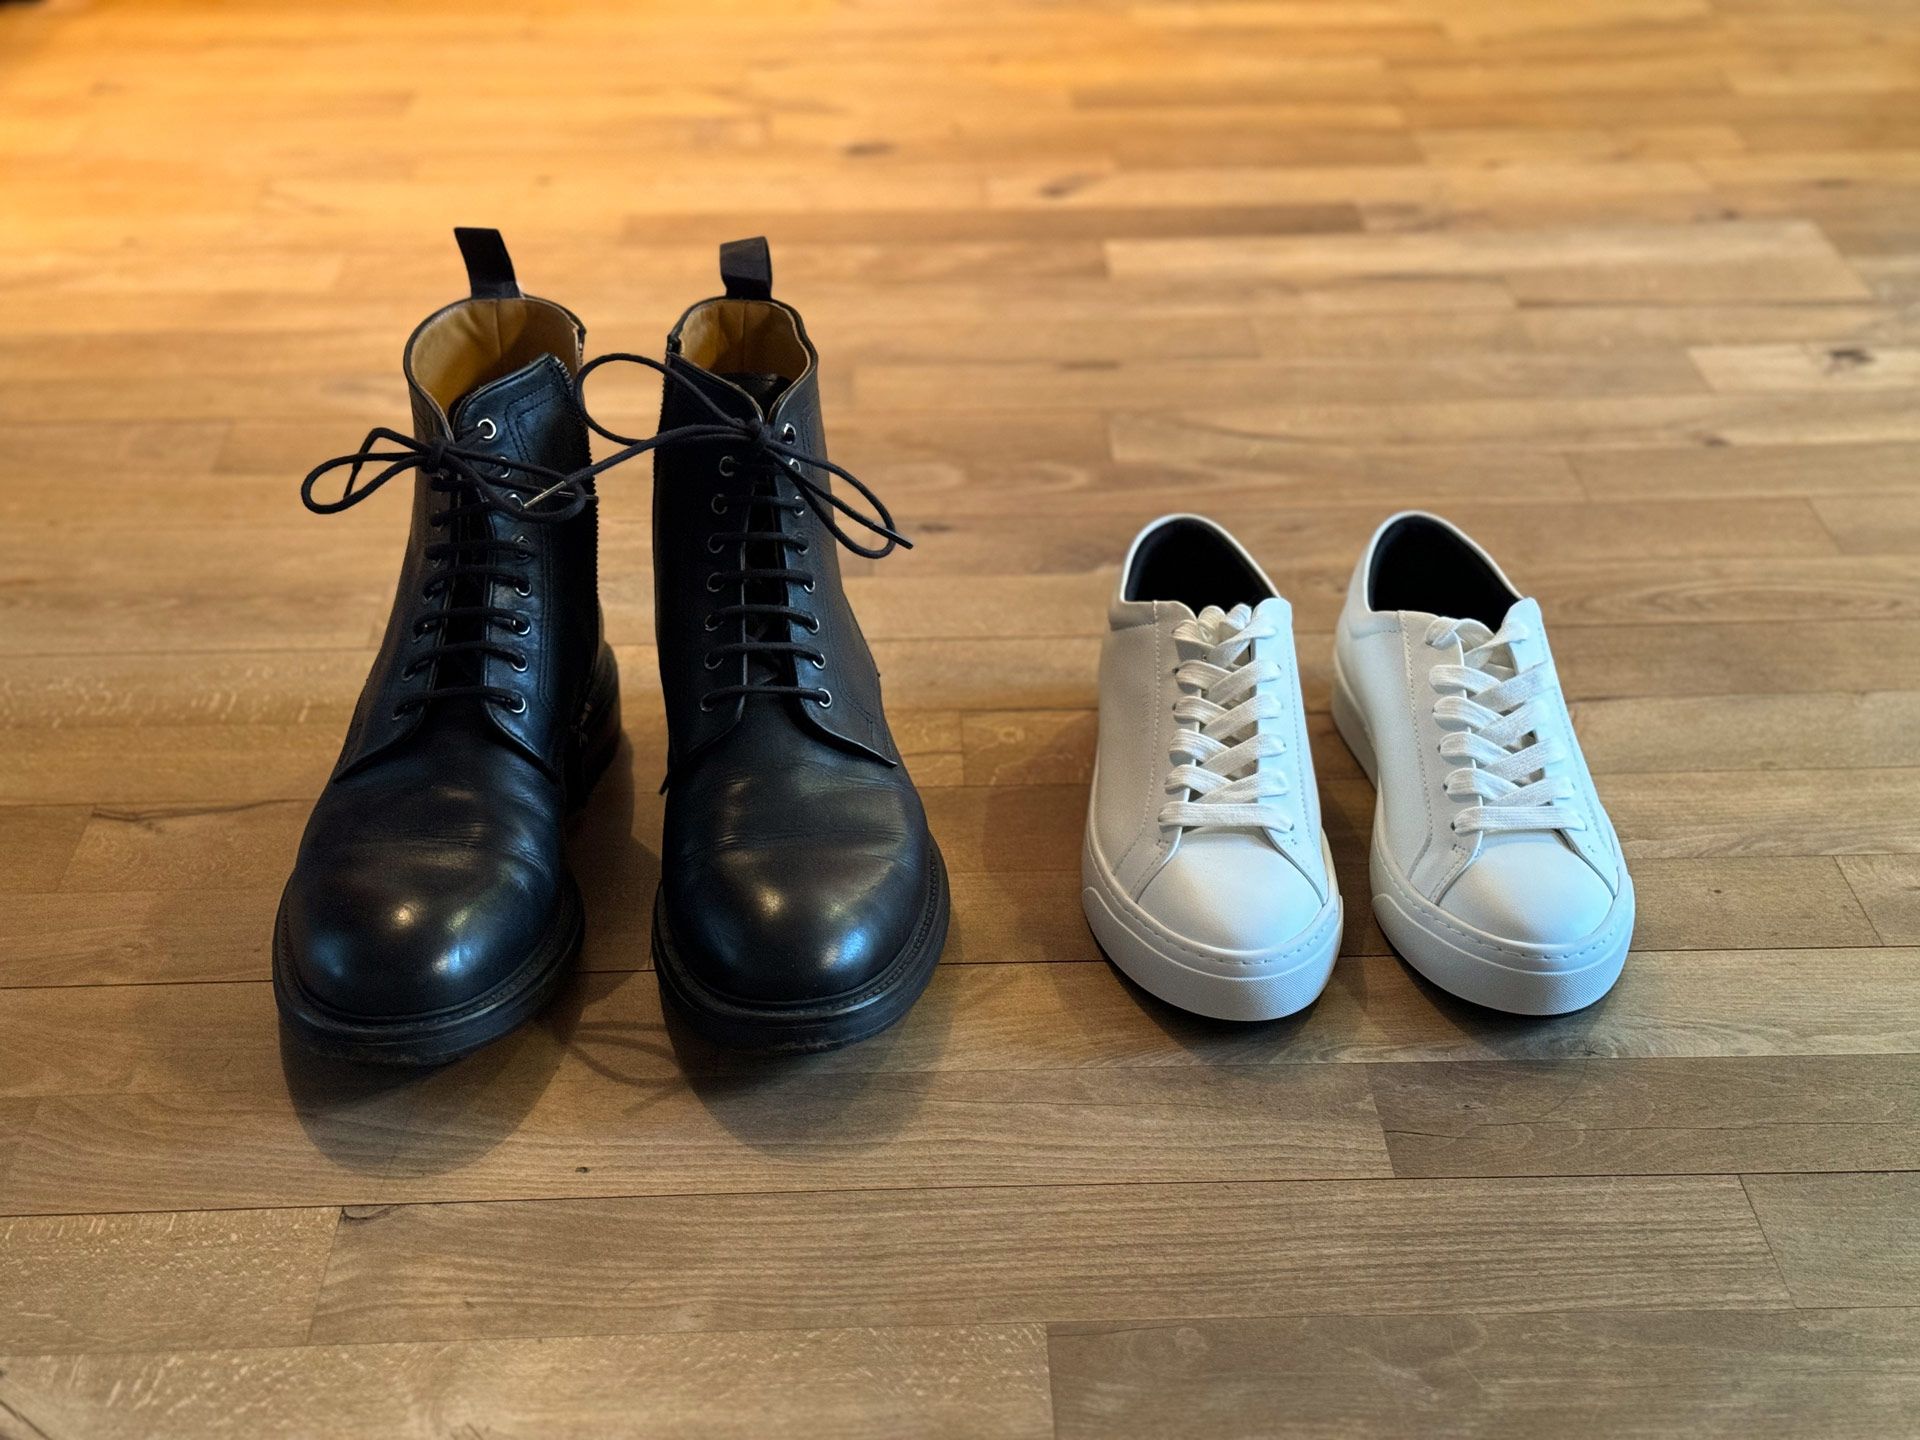 Ein Paar schwarze Herrenschnürstiefel steht neben einem Paar weißen Damen-Leder-Sneakern auf einem Holzfußboden.